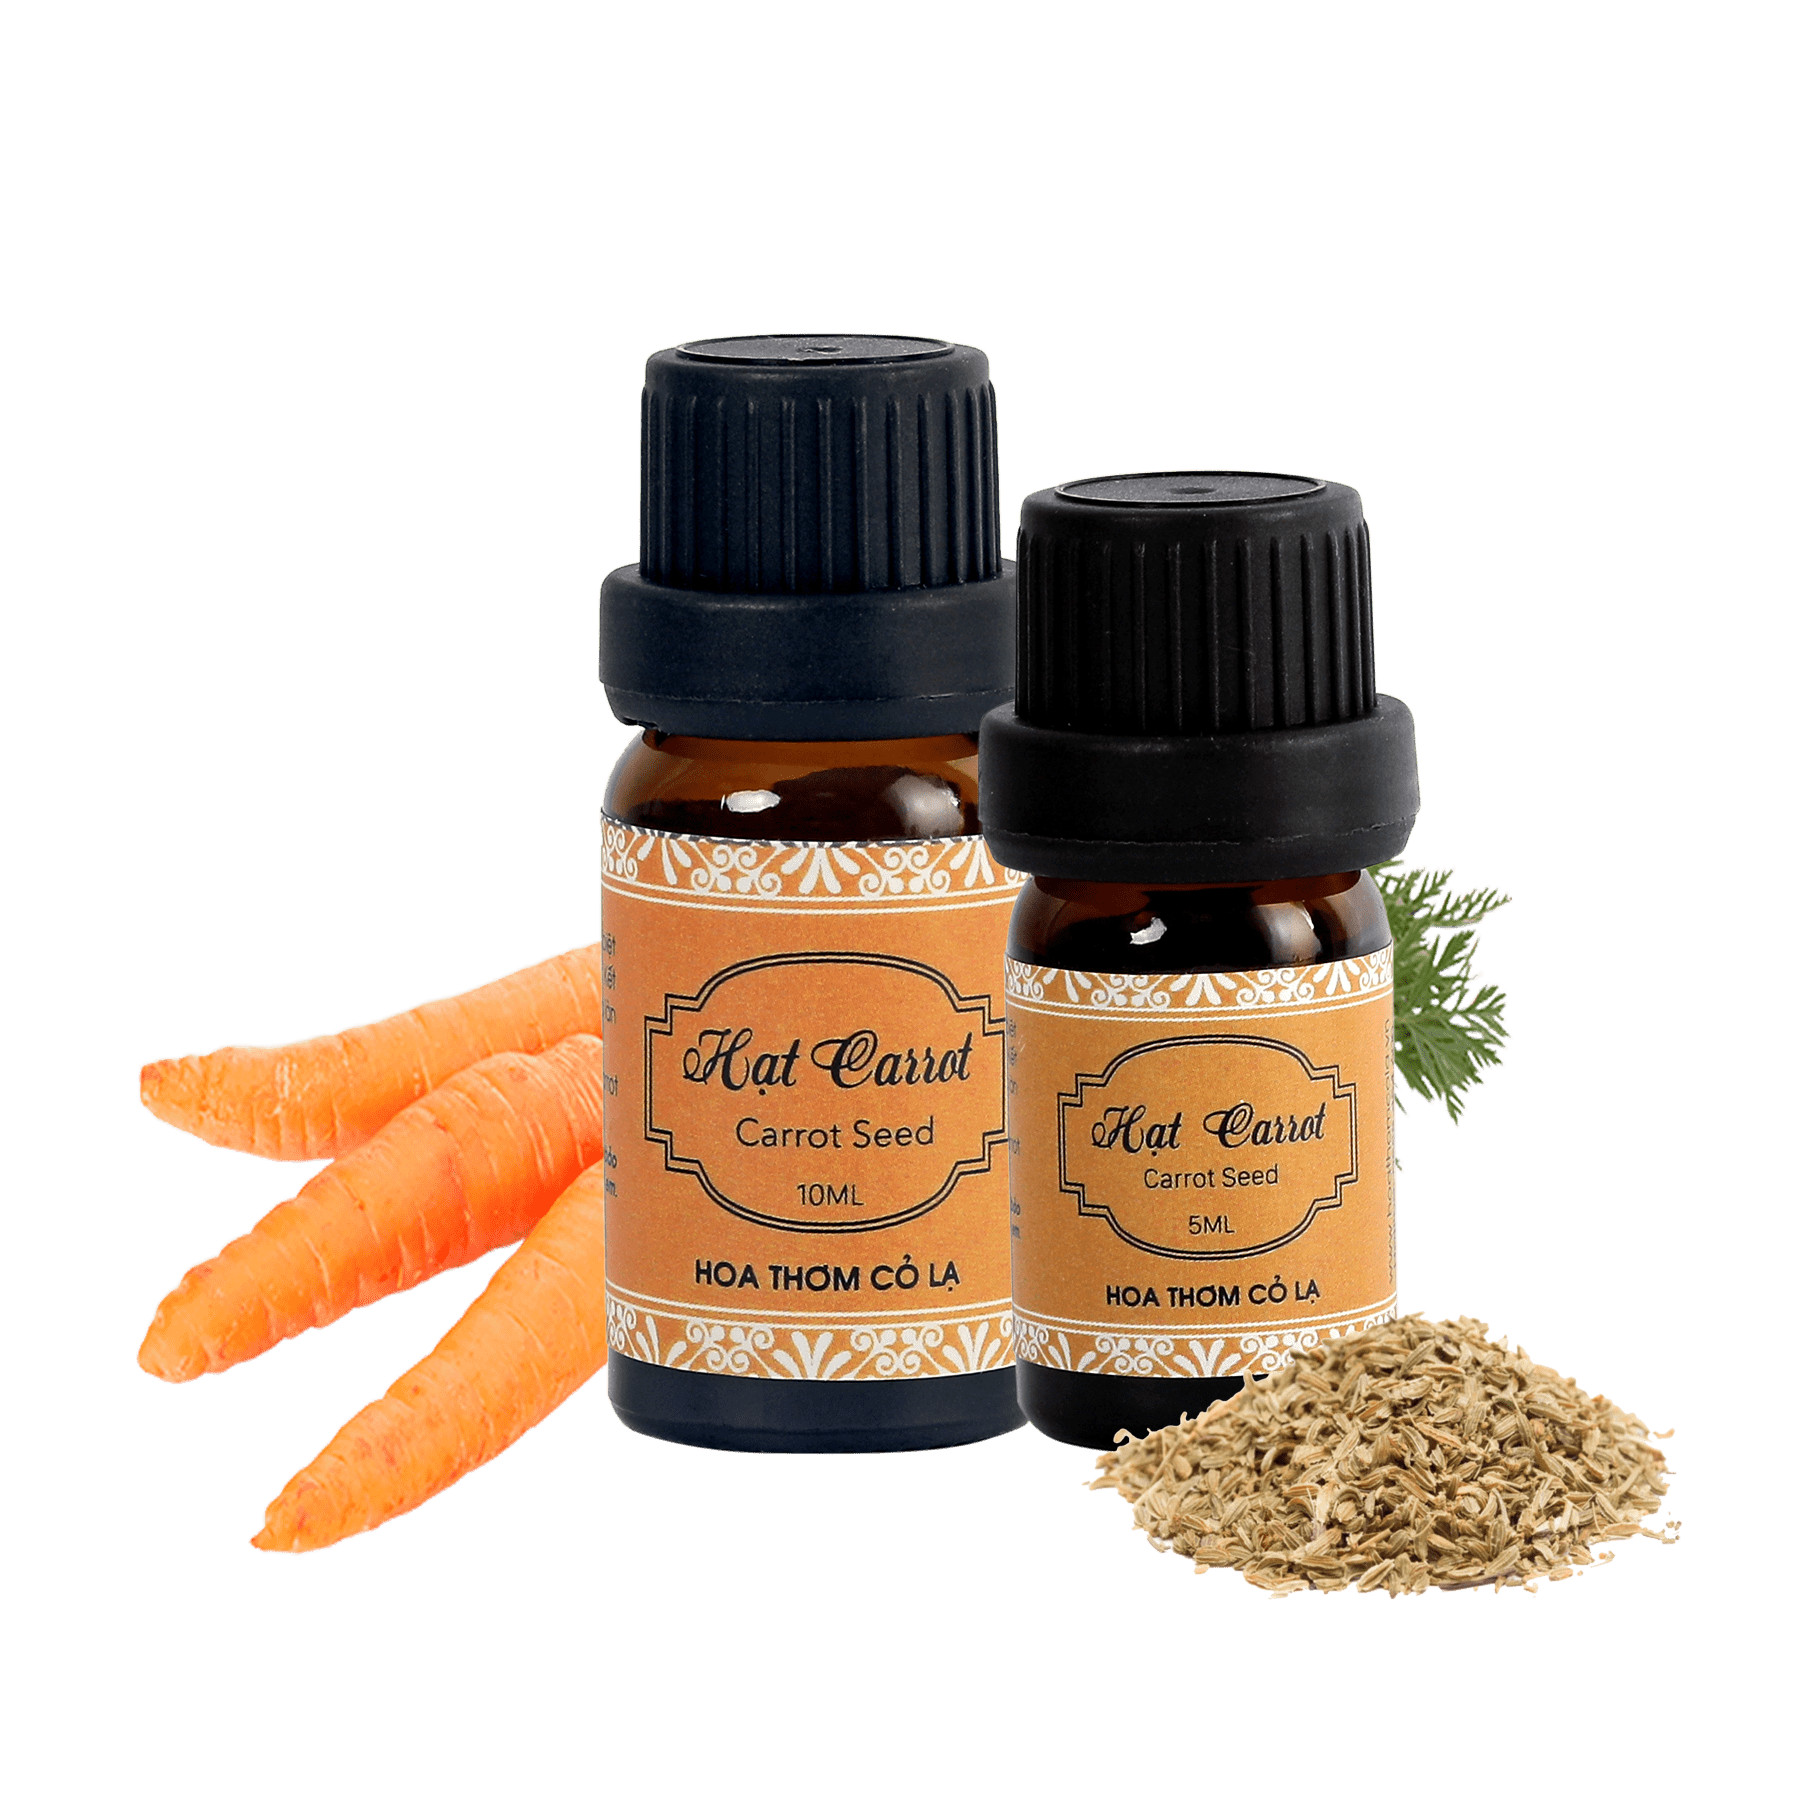 Tinh Dầu Hạt Cà Rốt - Carrot Seed Essential Oil 10ml - Hoa Thơm Cỏ Lạ